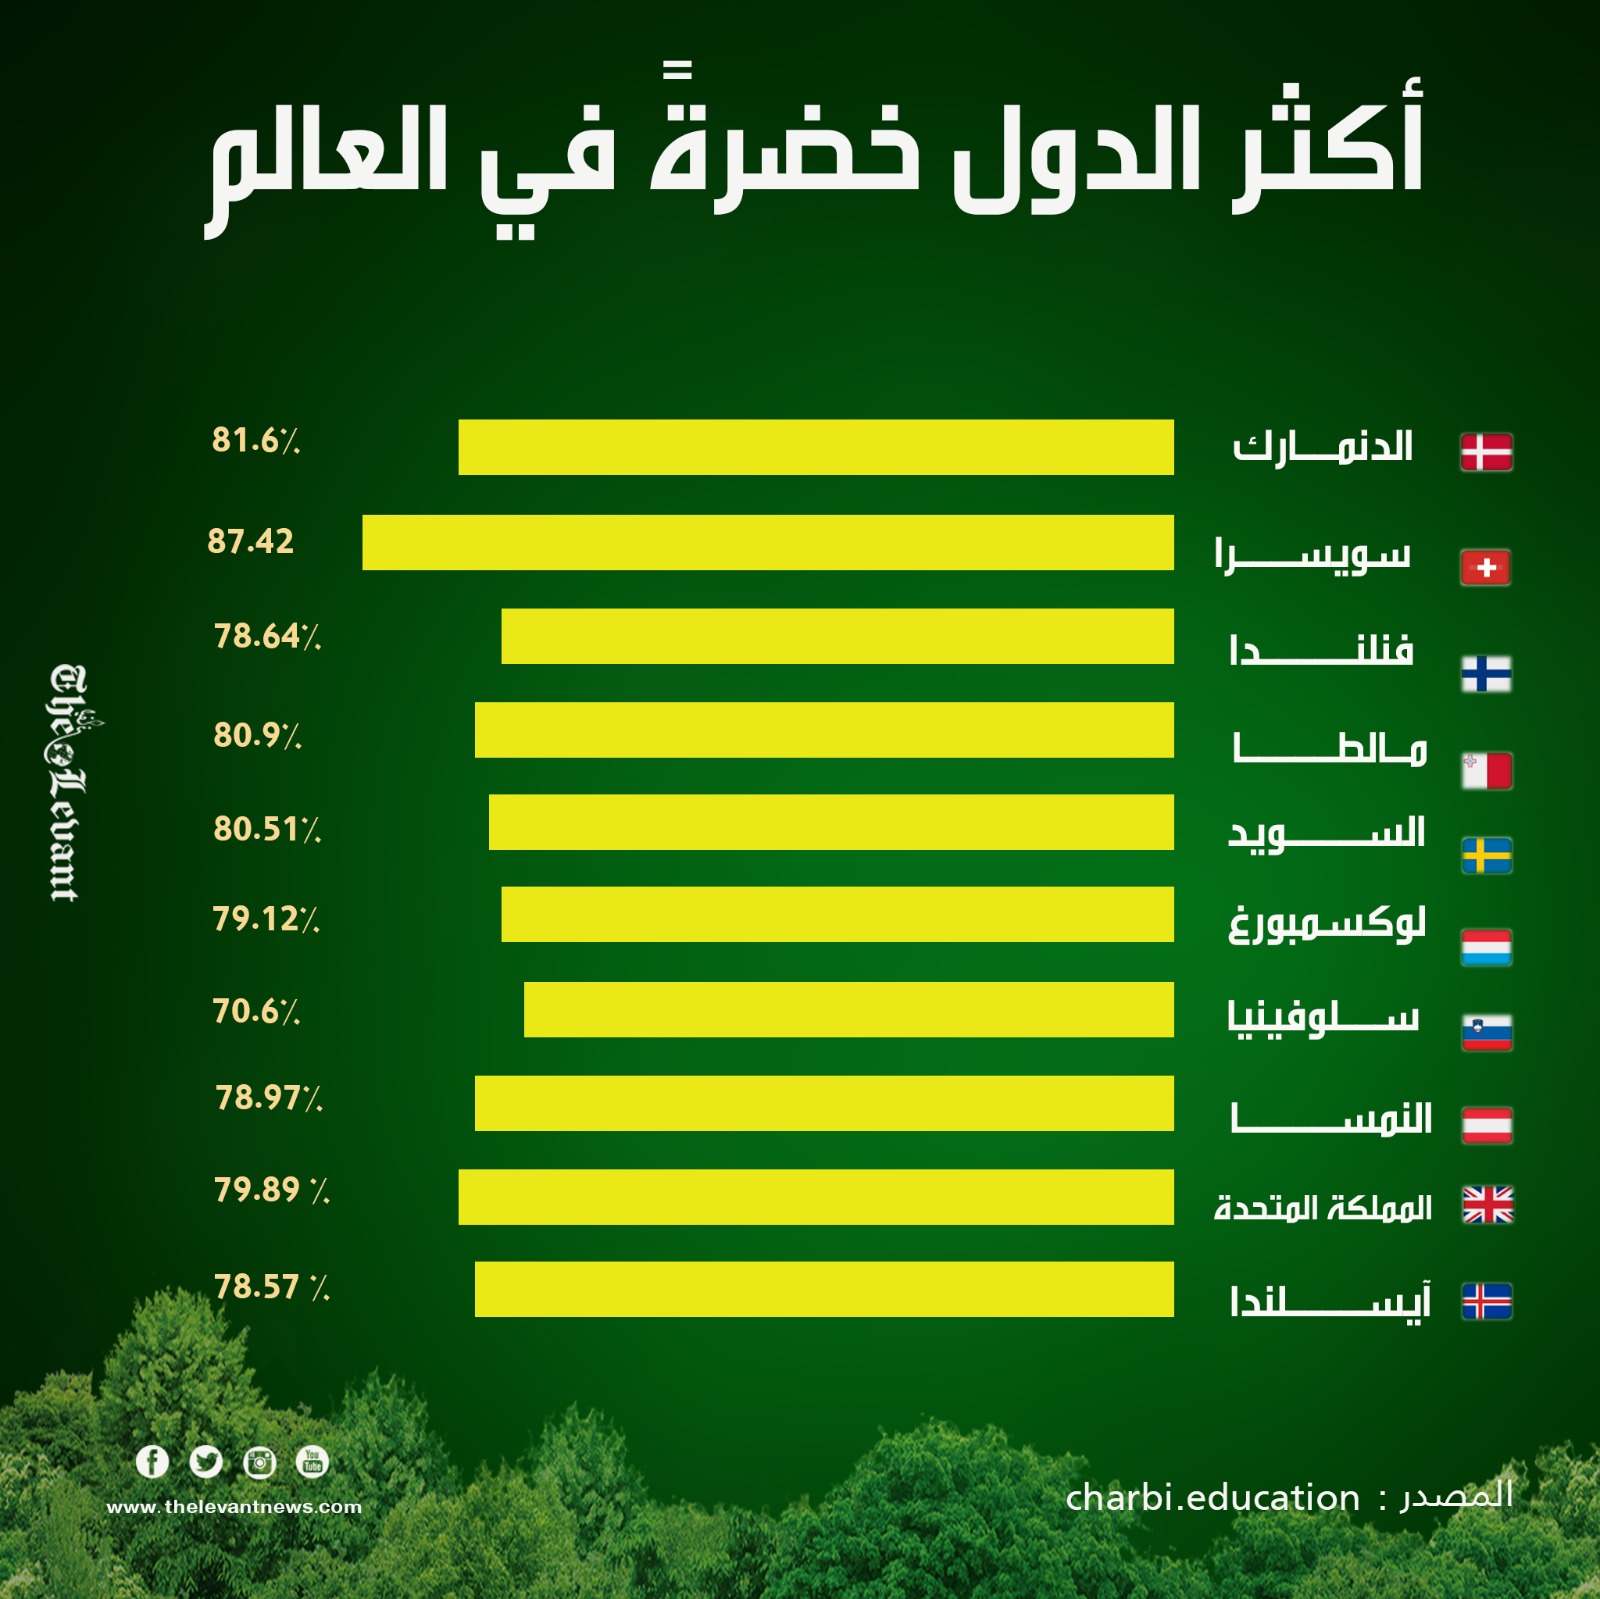 أكثر الدول خضرة في العالم